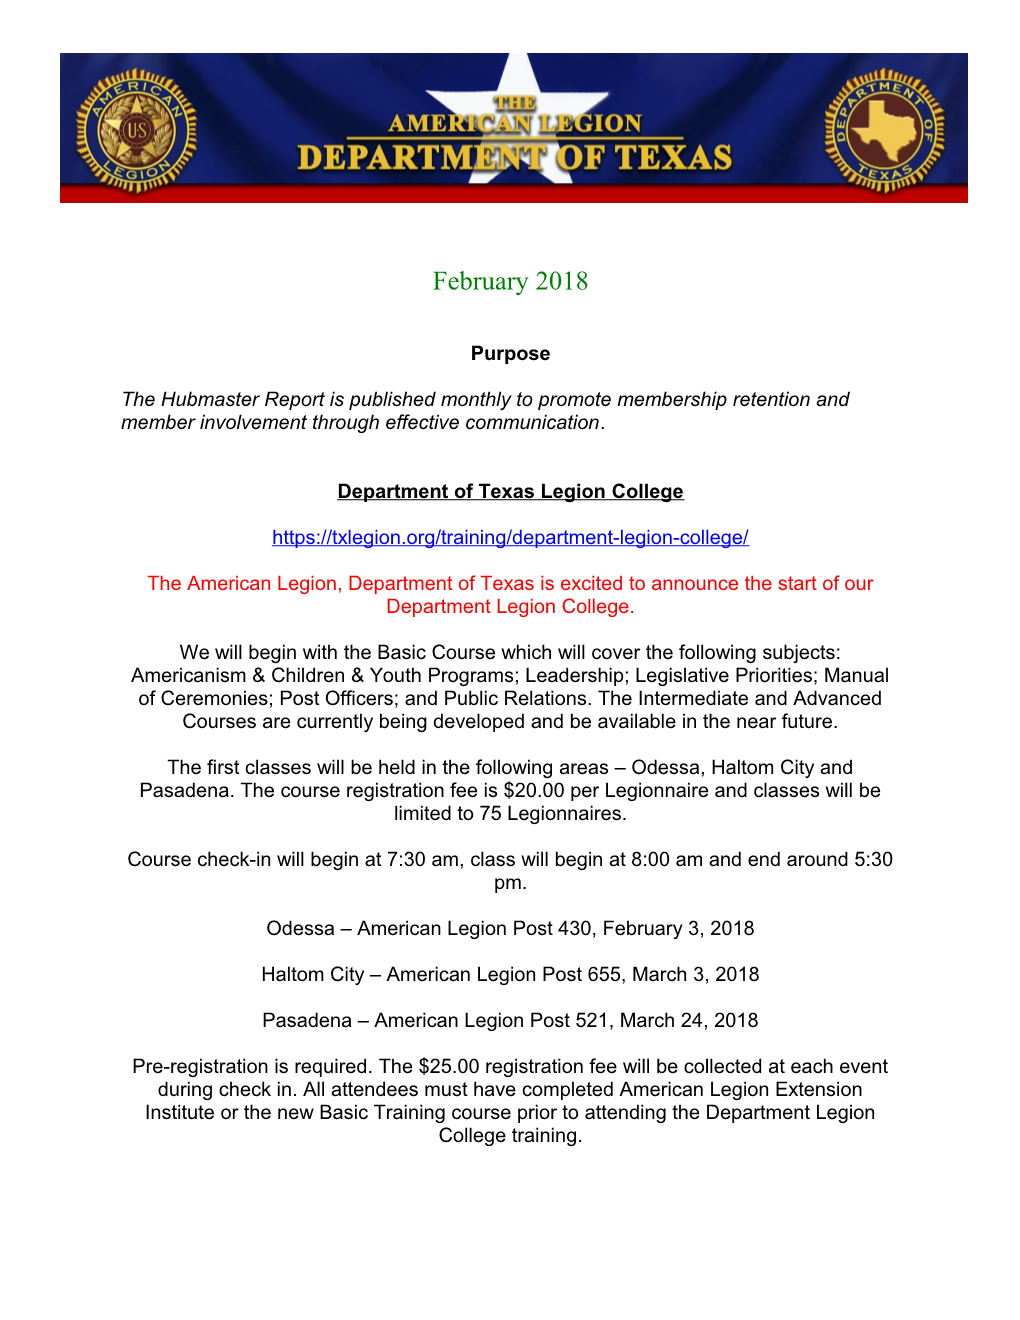 Department of Texas Legion College